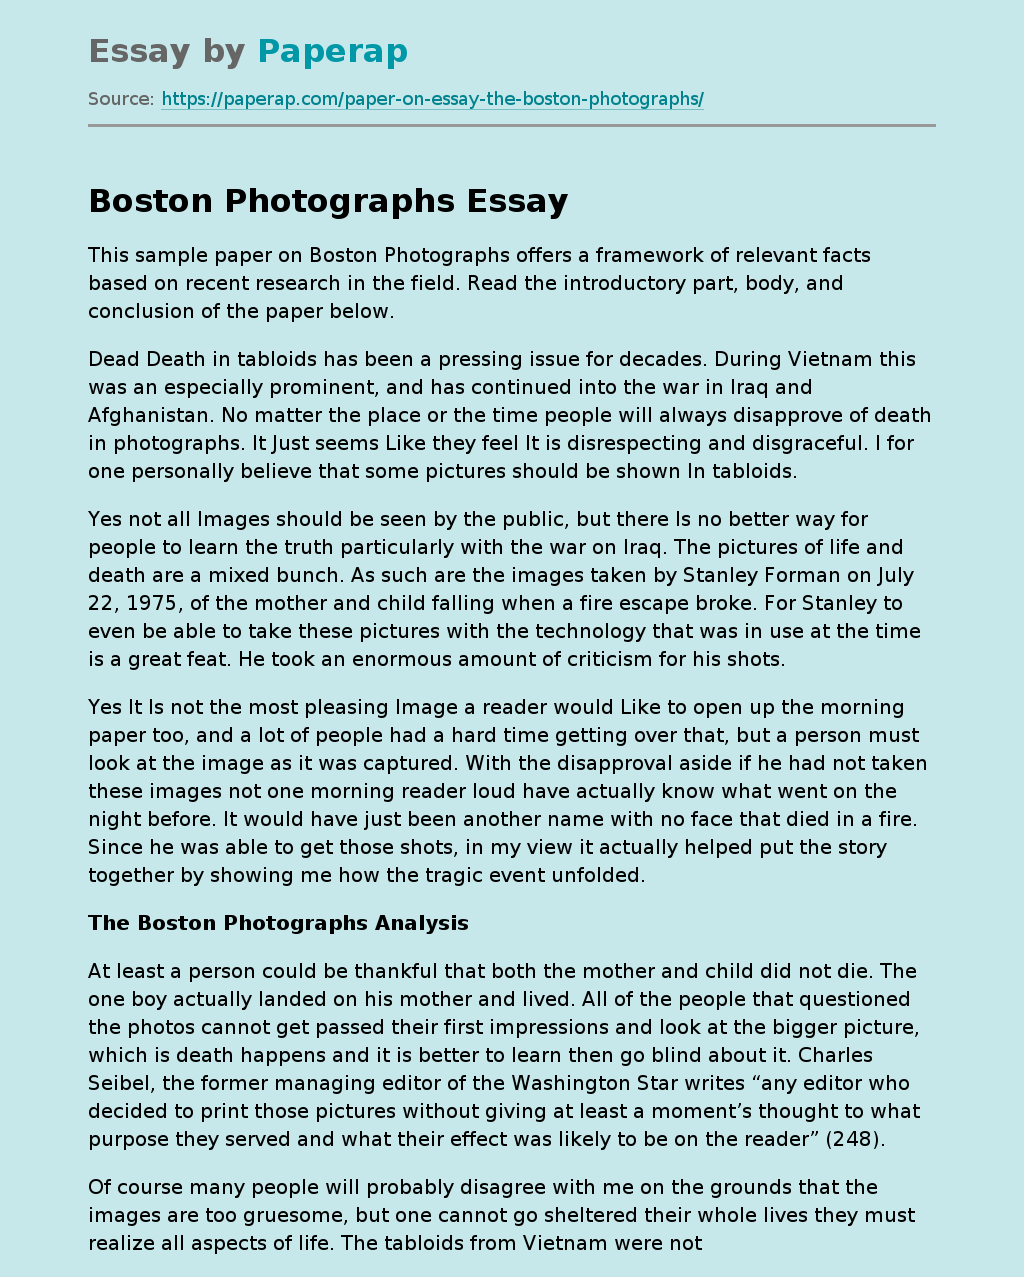 The Boston Photographs Analysis